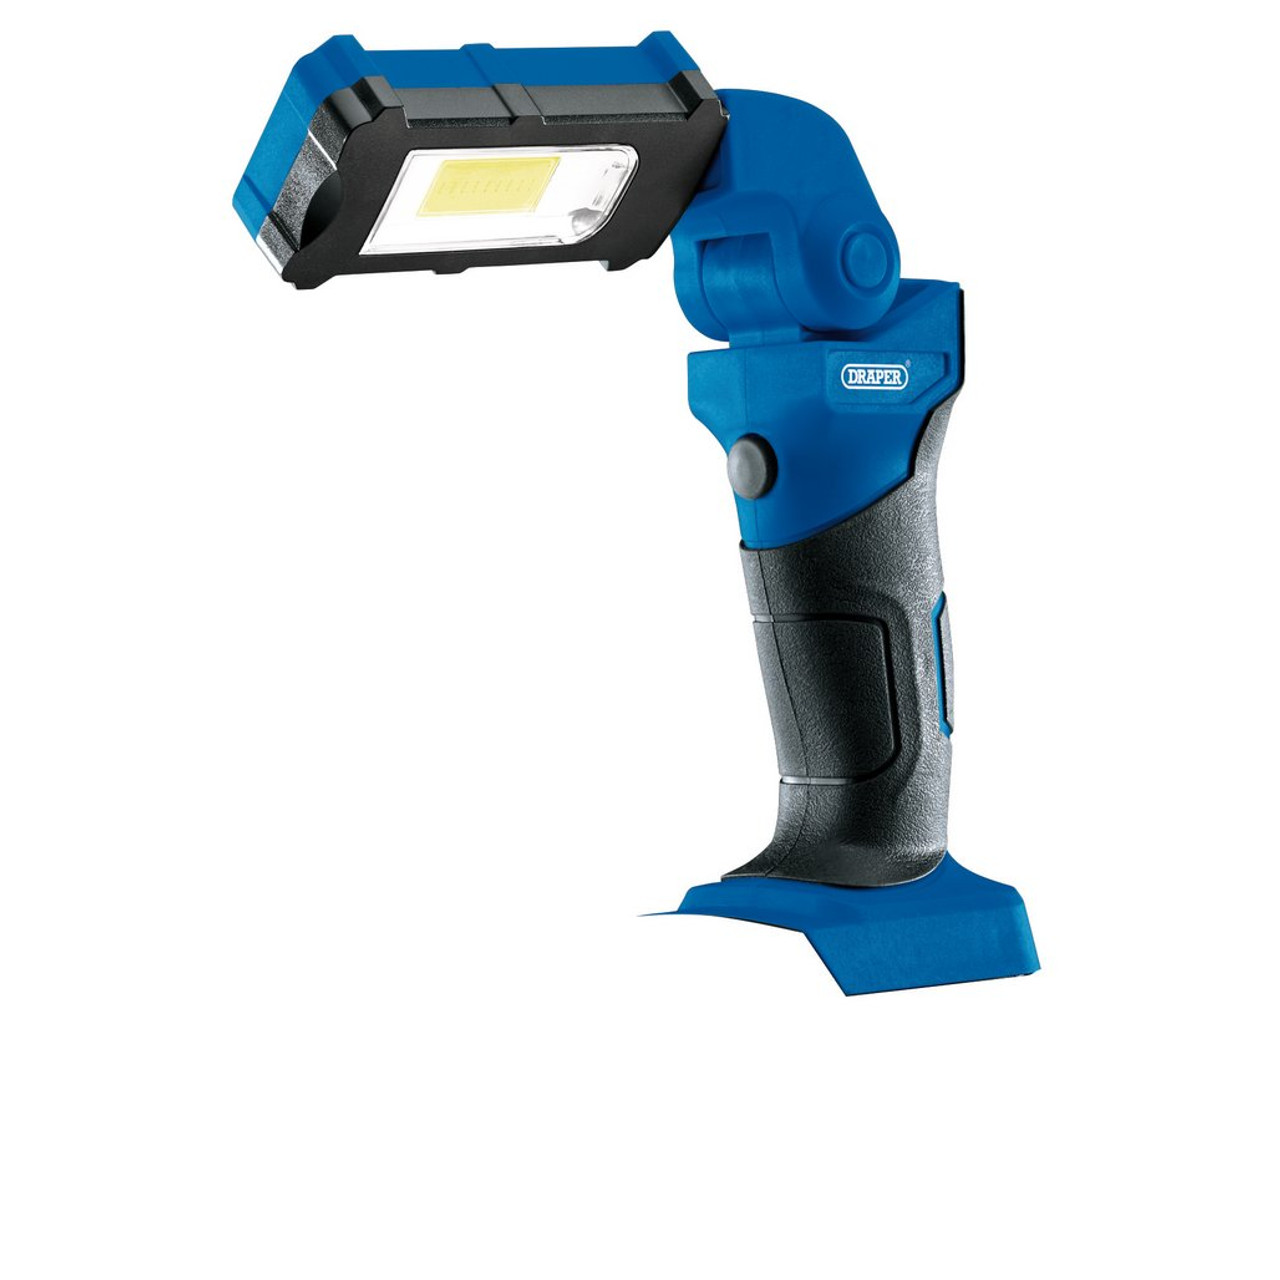 D20 20V LED Flexible Inspection Light (Sold Bare)